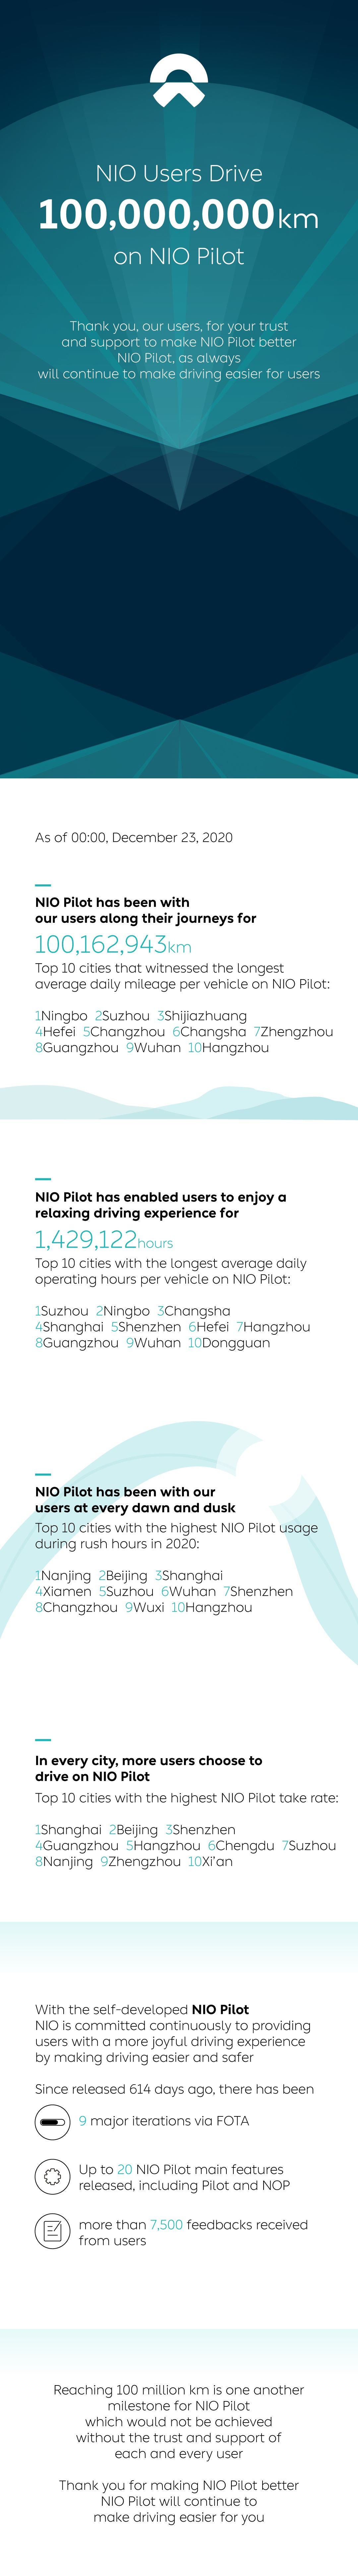 NIO Users Drive 100 Million Kilometers on NIO Pilot